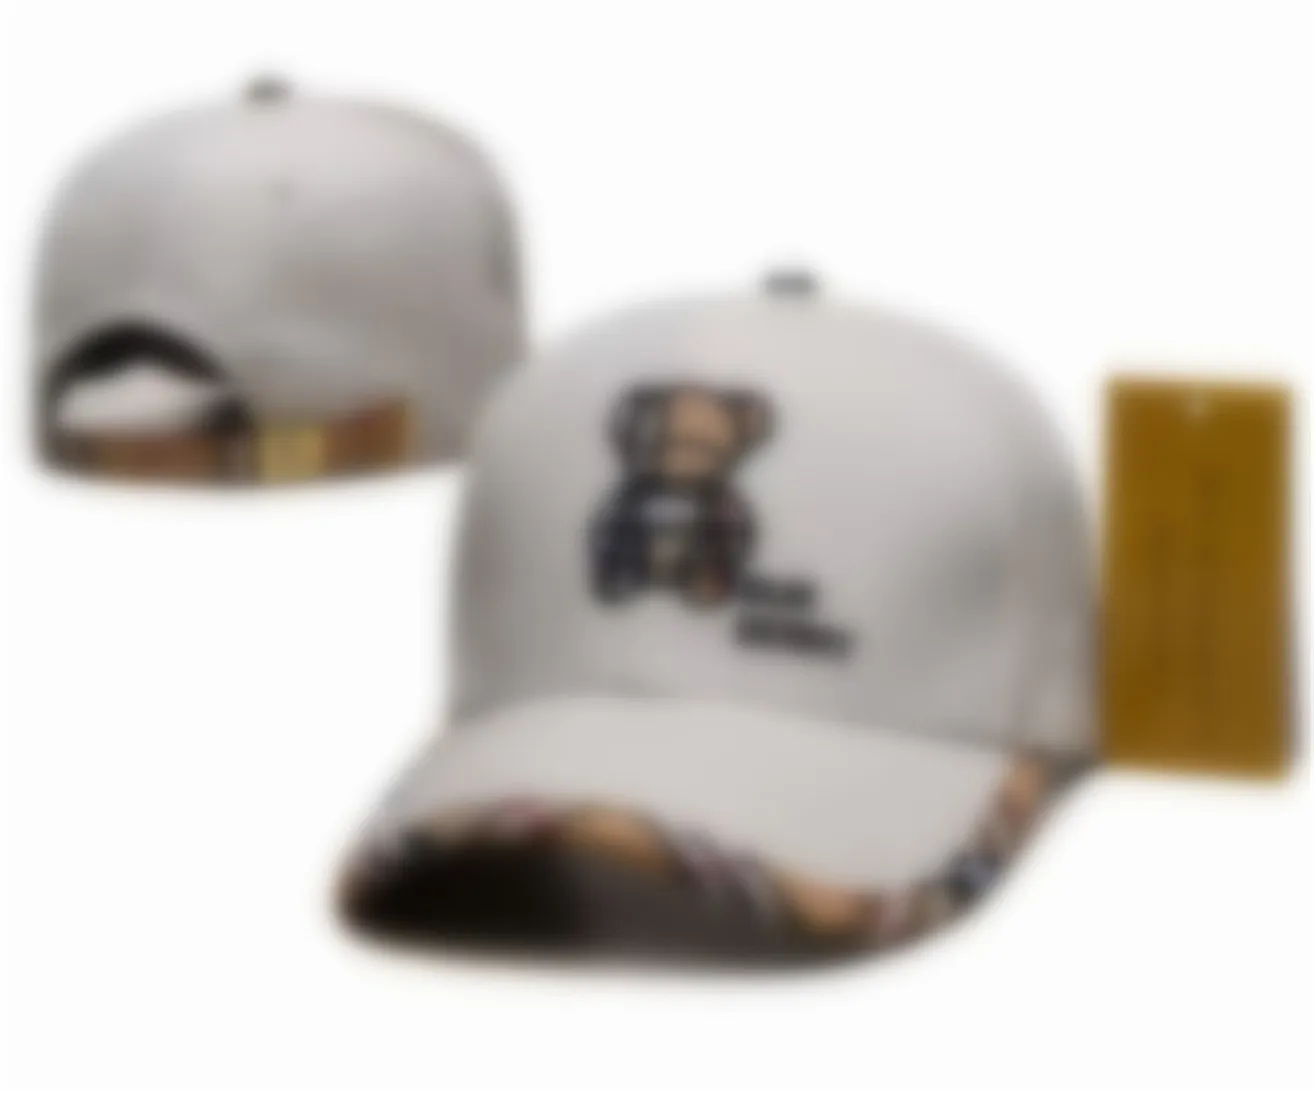 Красочный дизайнер для мужчин классический бейсбольный роскошный шляпы шляпы шляпы модные шляпы Ball Fashion Baseball Caps Men Sunvisor Designer Cap